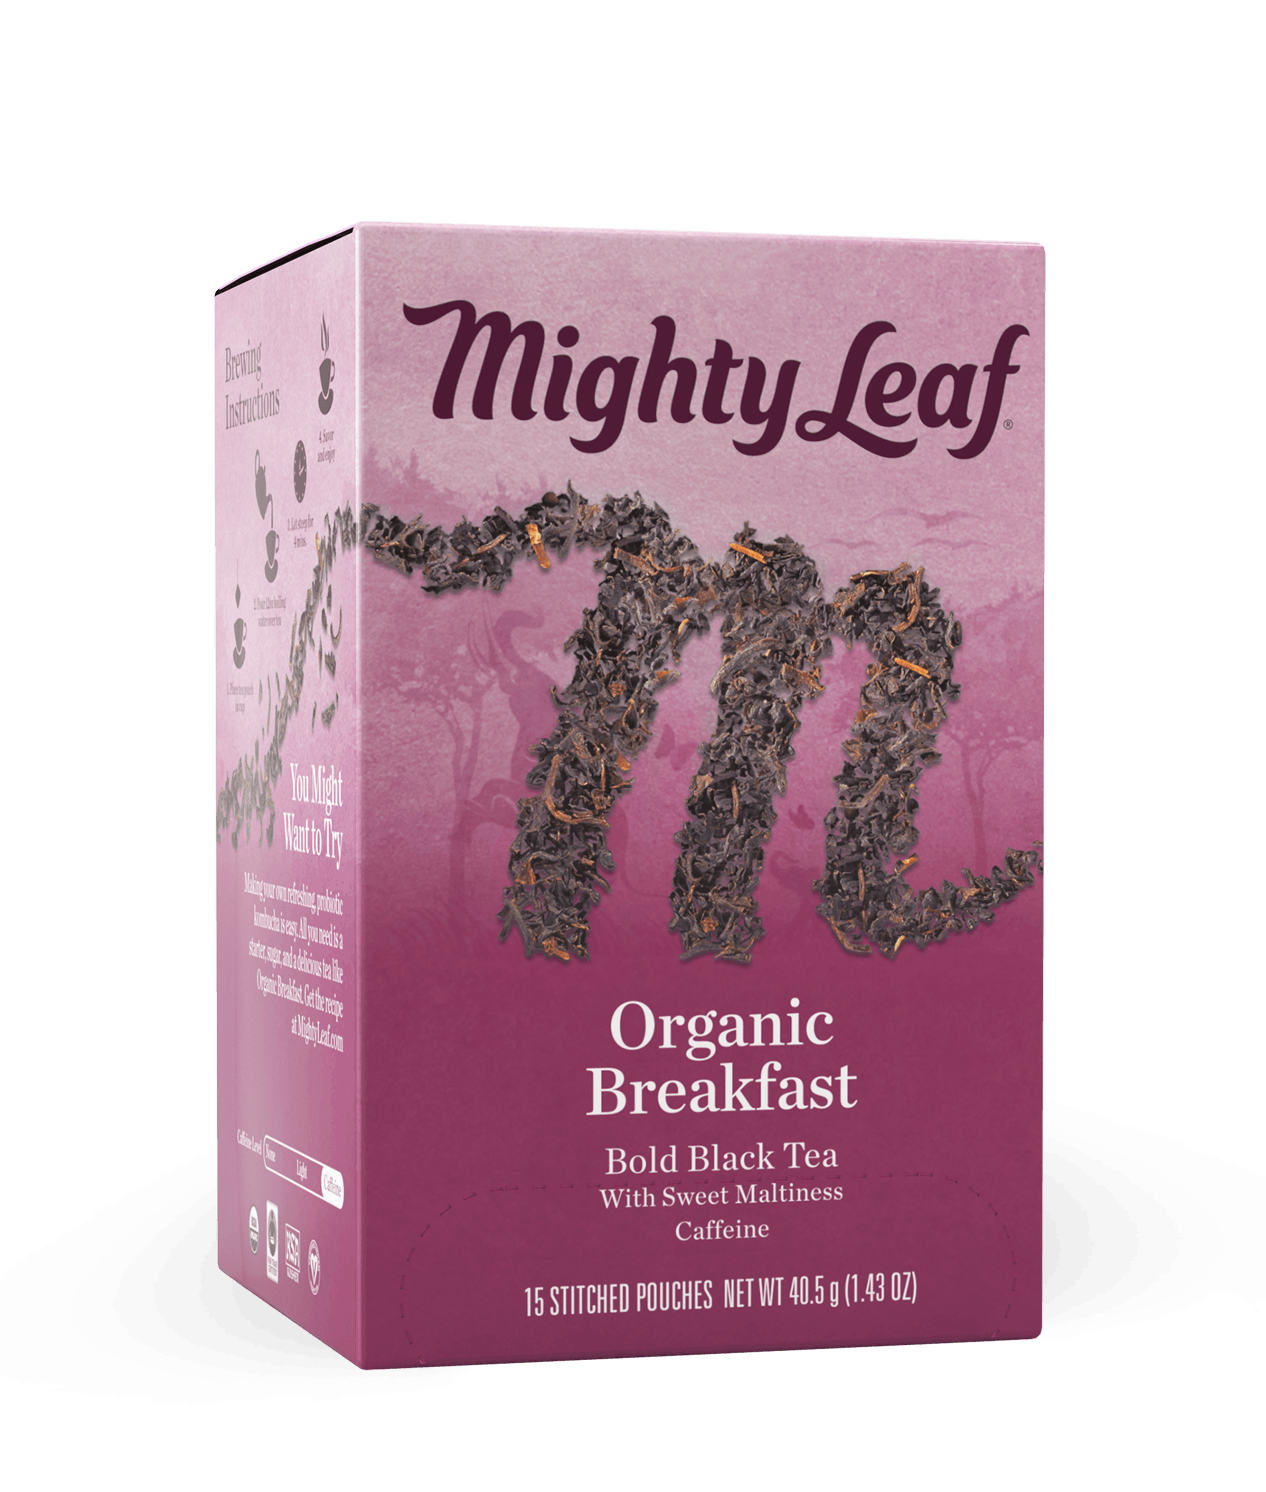 English Breakfast organic  16 compatible capsules - Must espresso